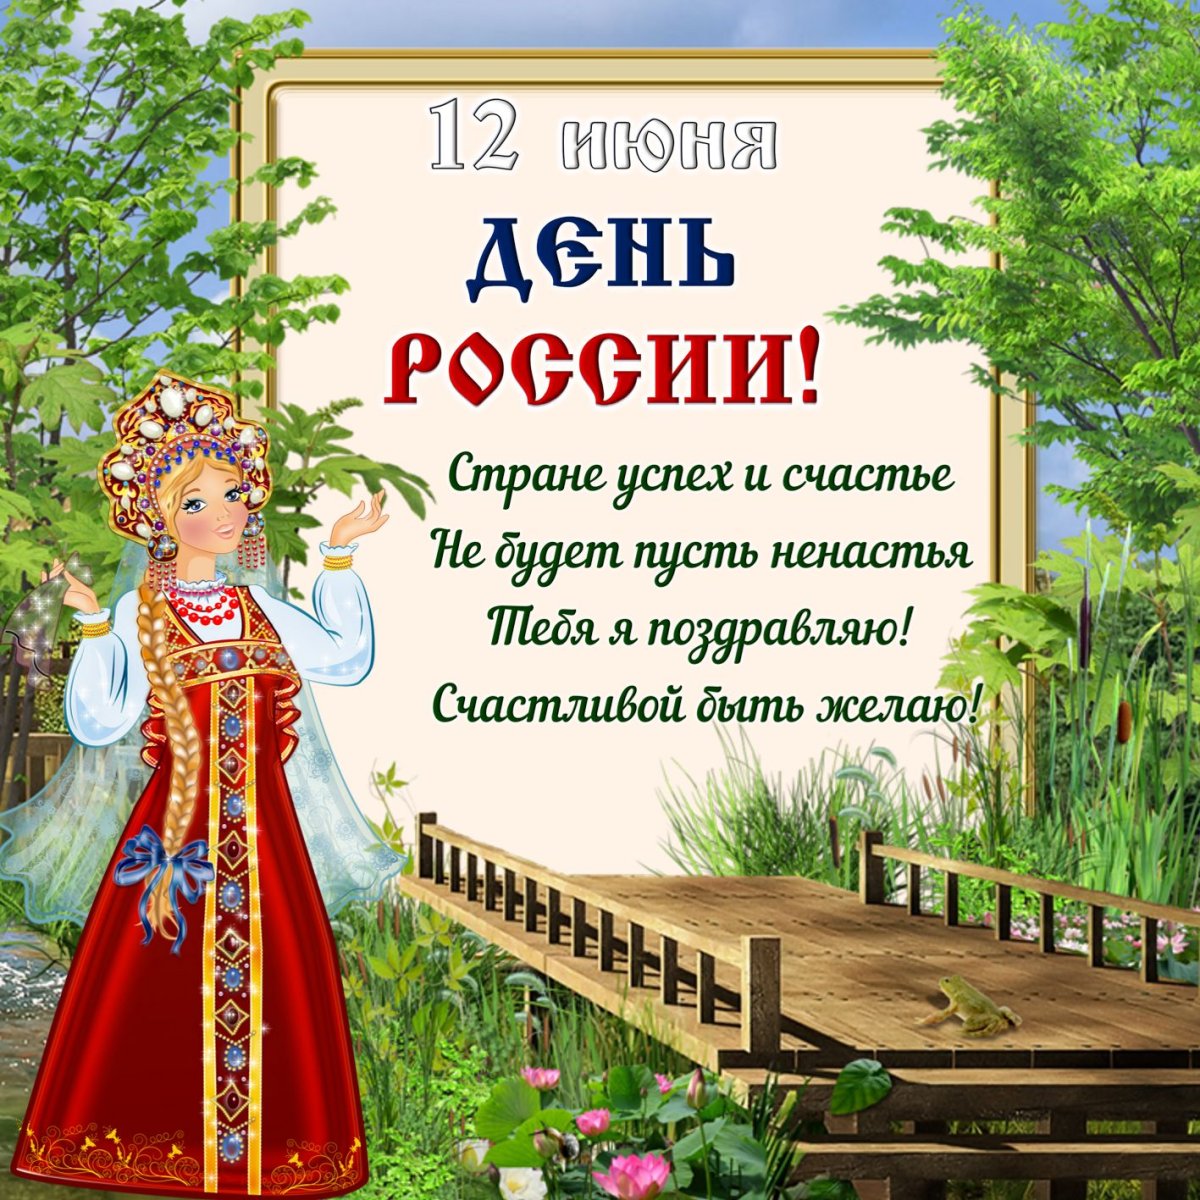 На День России 12 Июня. Красивые открытки и картинки